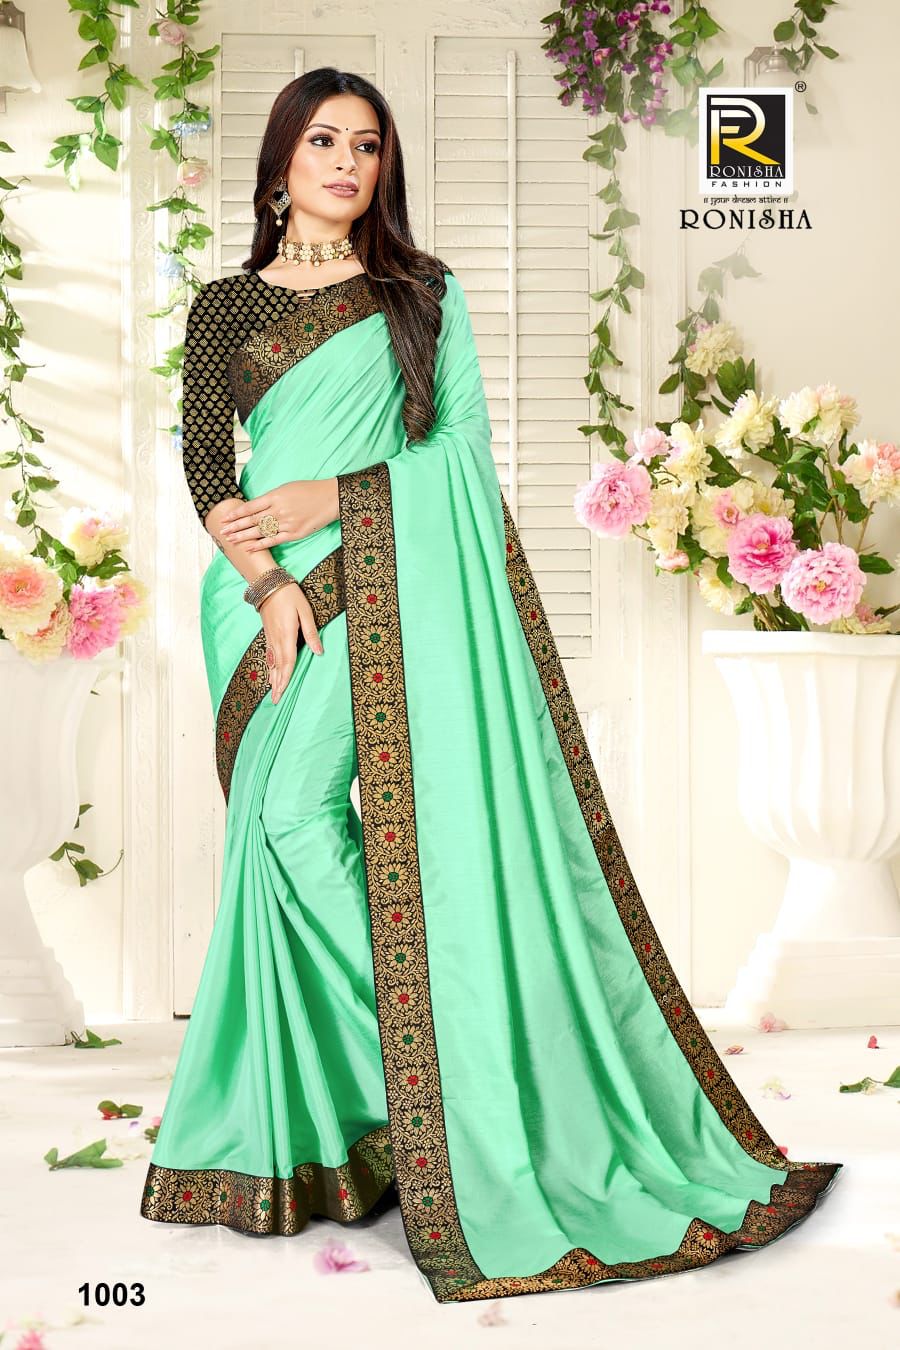 Ronisha Fashion Rajkumari 1003